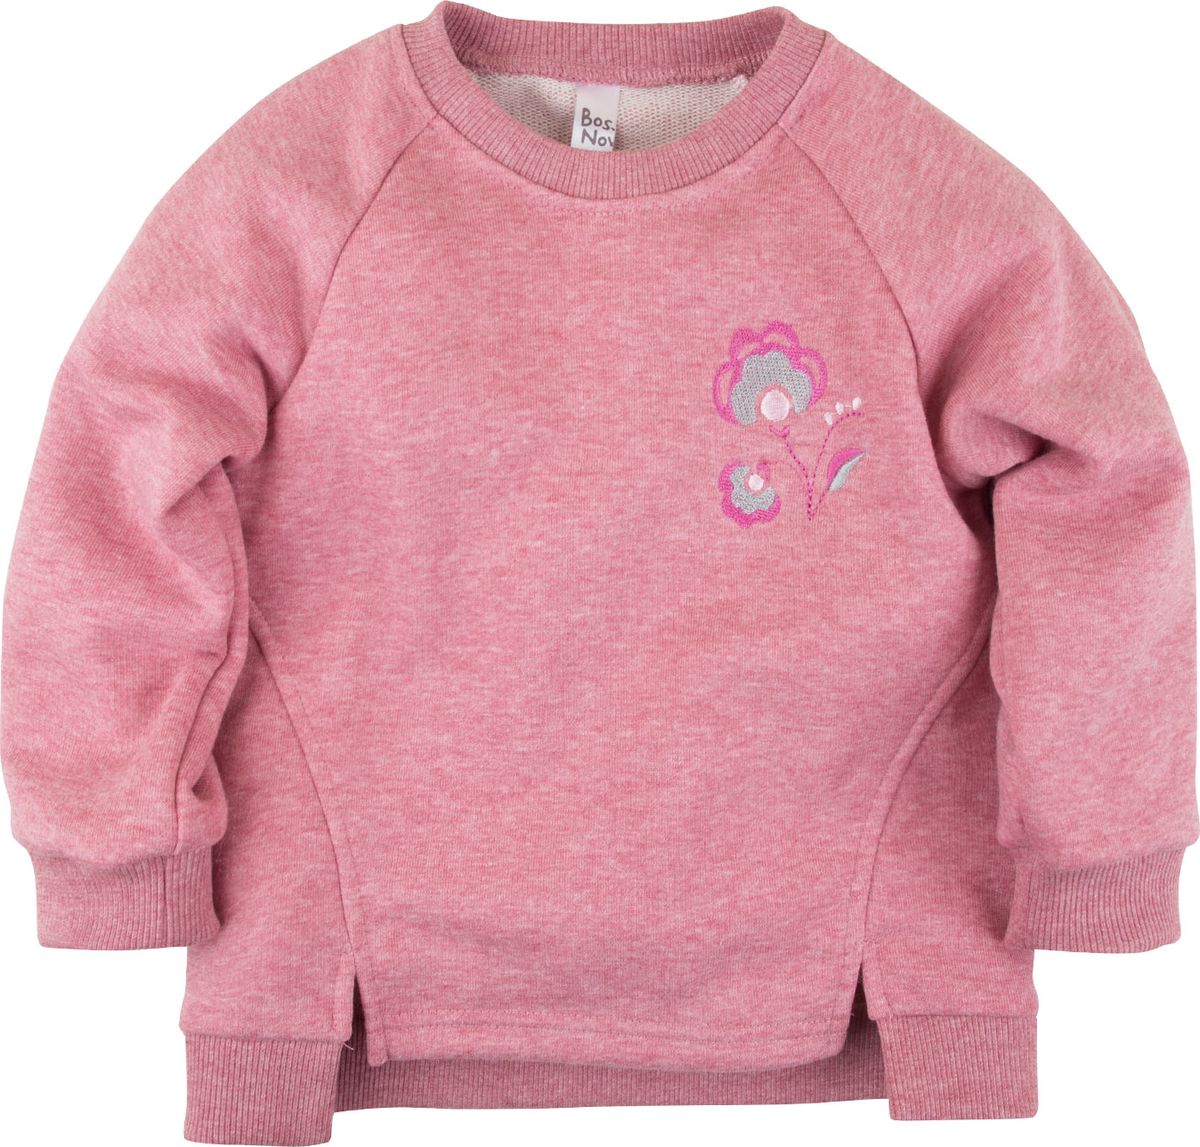 Кофта для новорожденных Bossa Nova Клюква, цвет: розовый меланж. 190Б-460. Размер 74